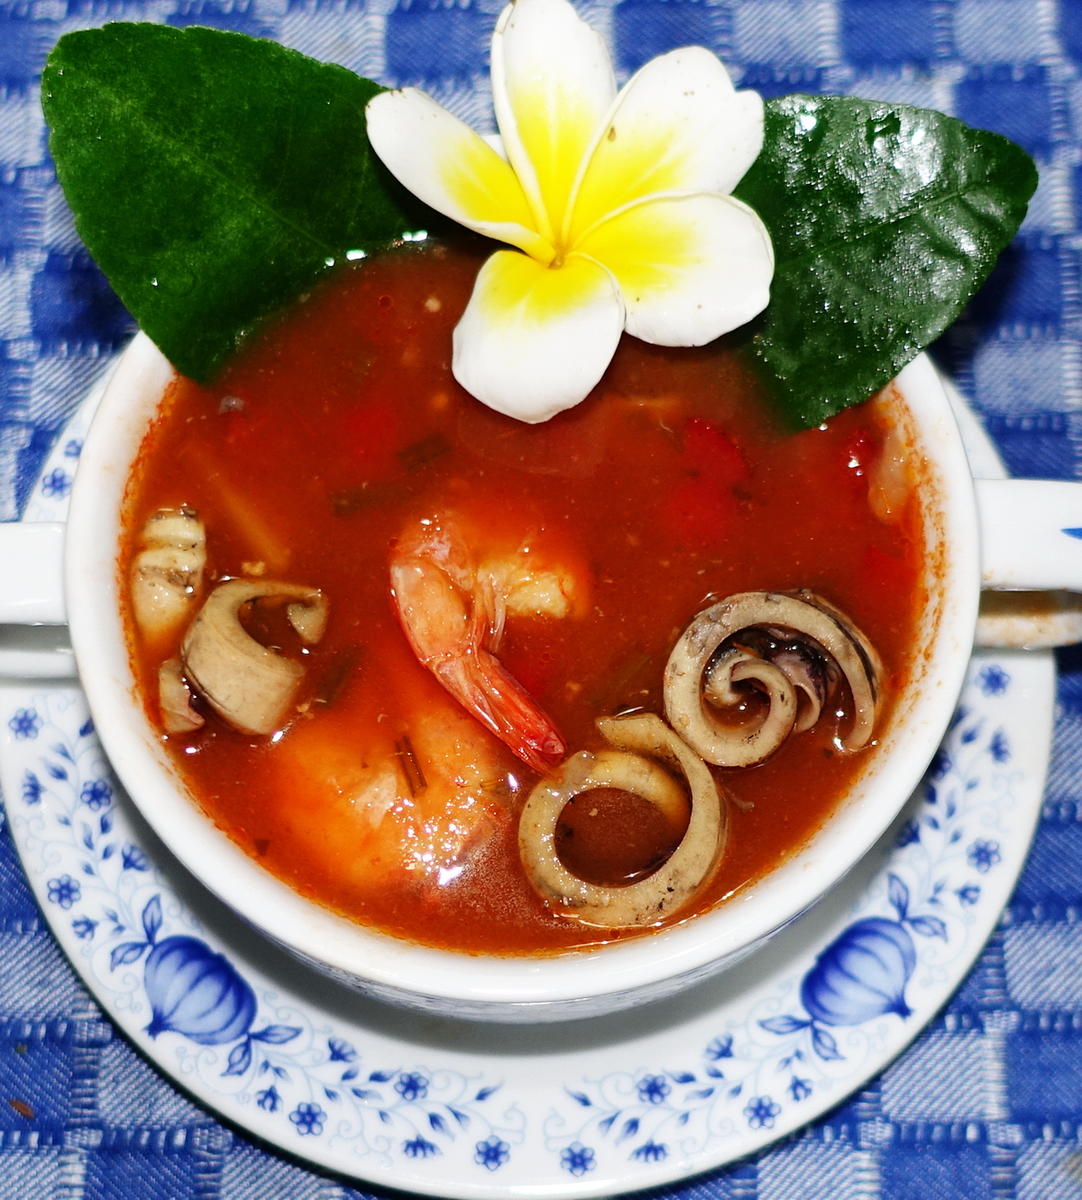 Feurige, rote Seafood-Suppe Kuta indah - Rezept - Bild Nr. 2